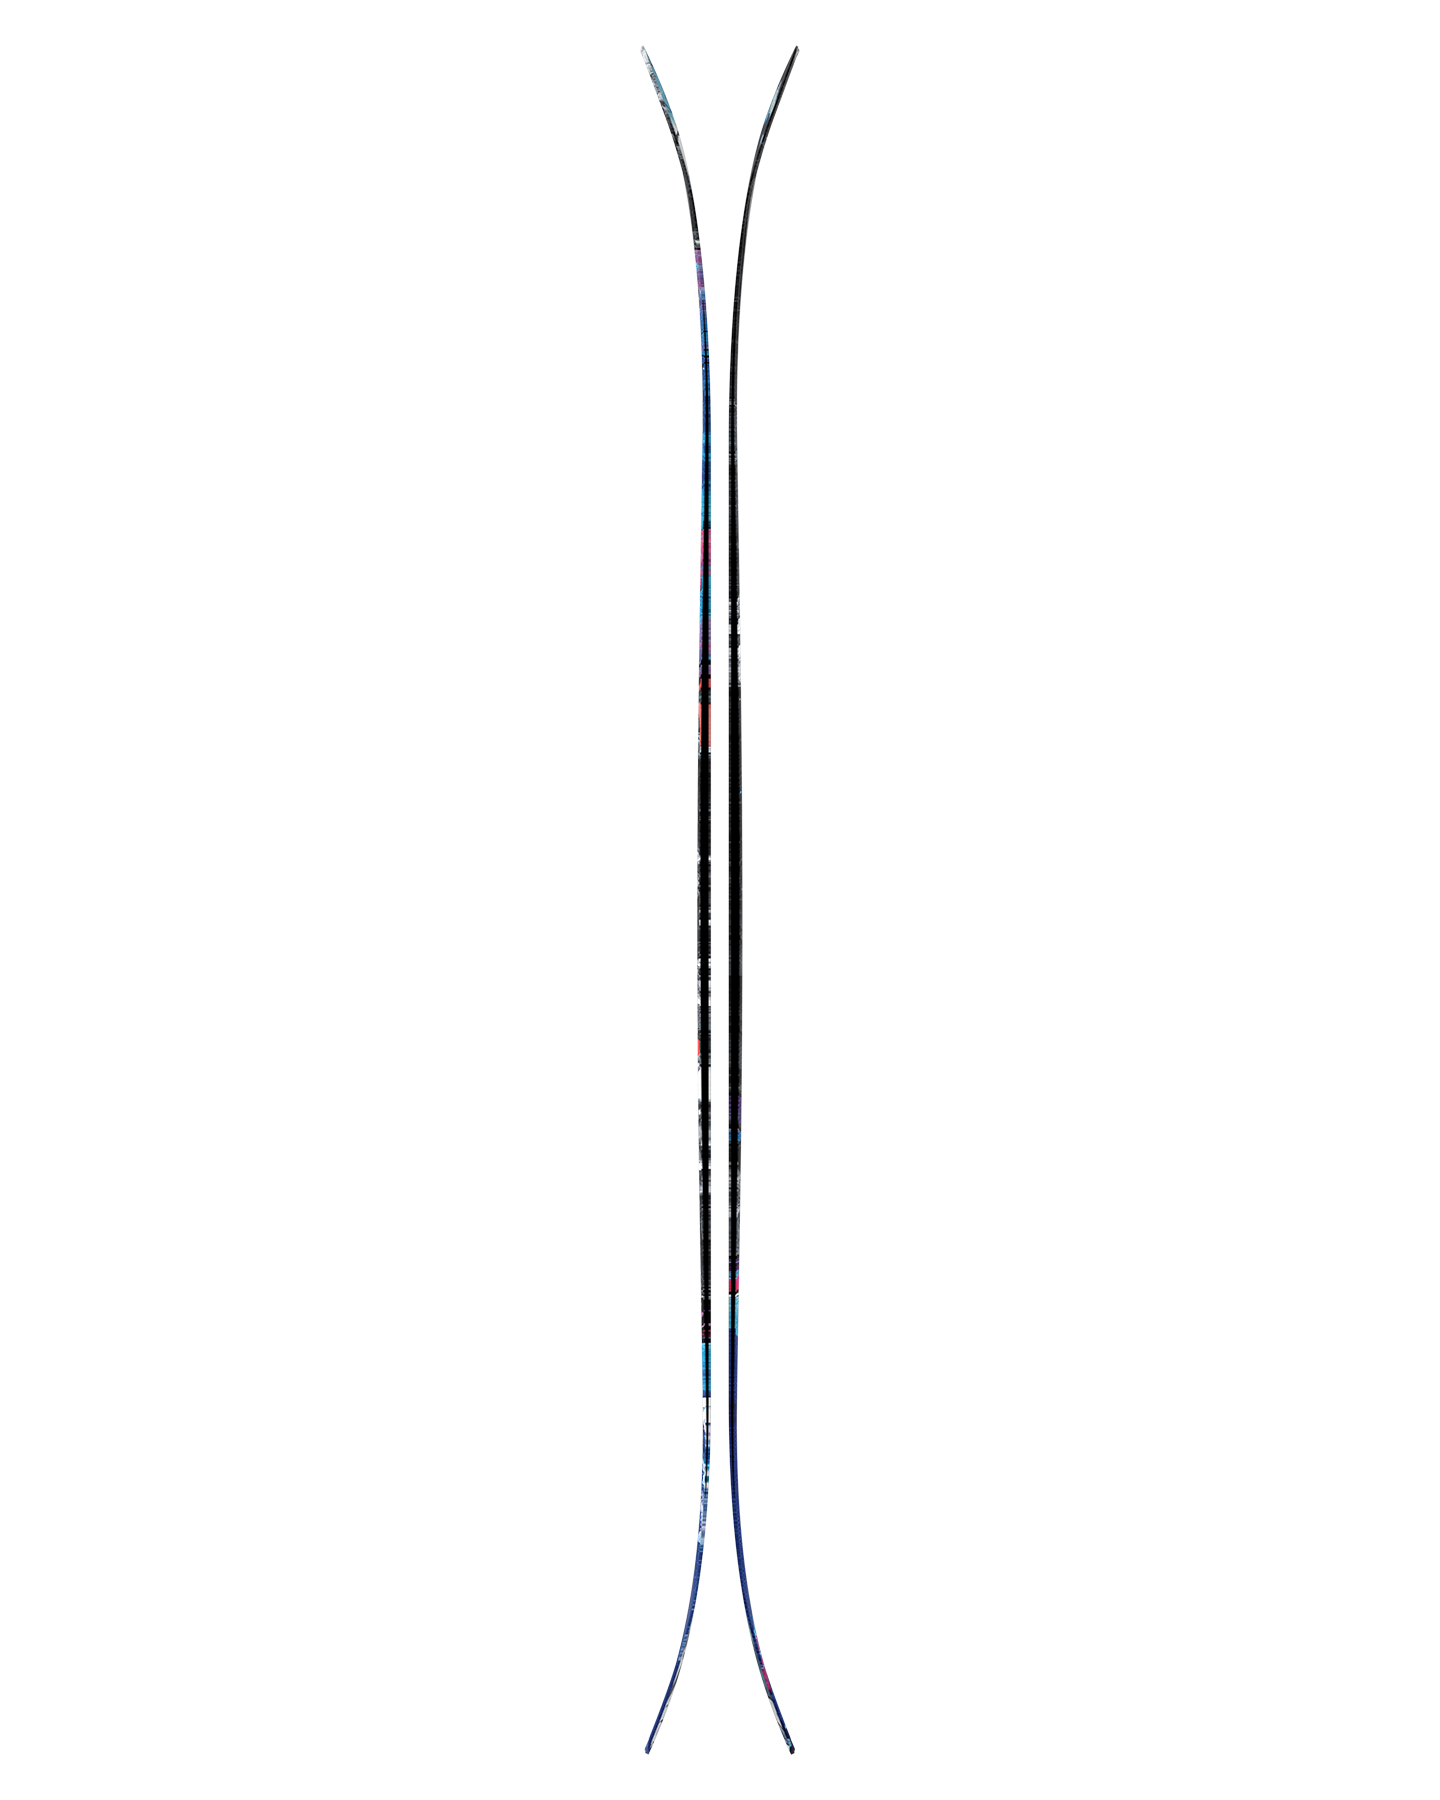 Atomic Bent 110 Skis - 2025 Men's Snow Skis - Trojan Wake Ski Snow